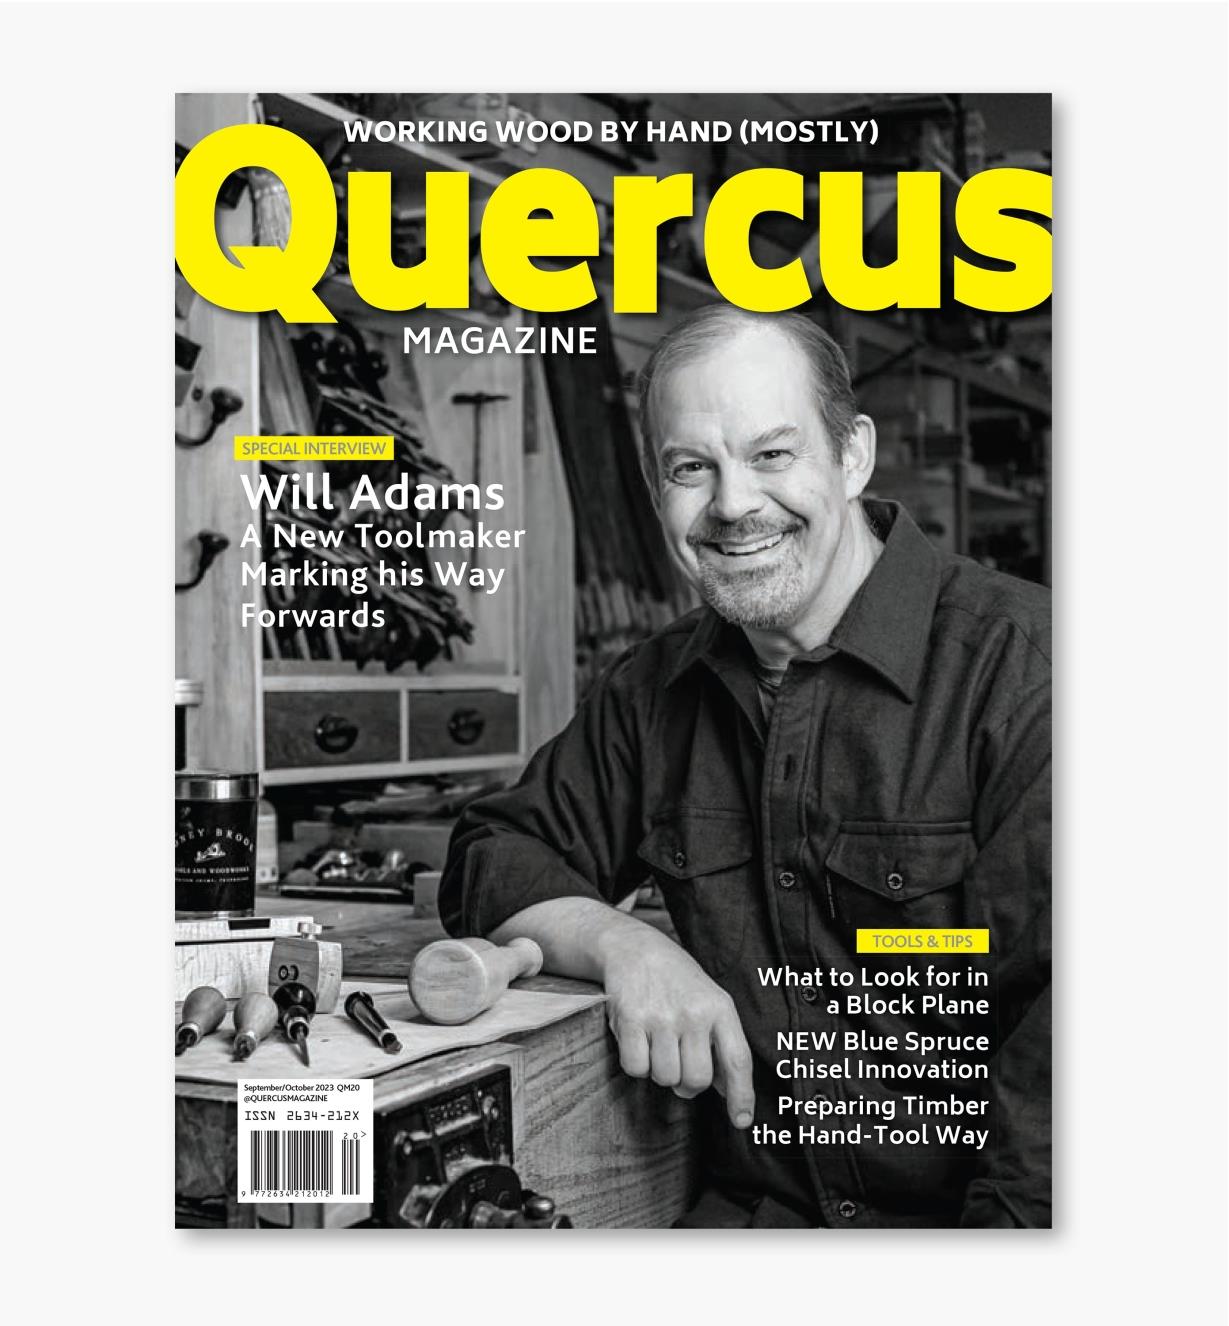 42L9560 - Quercus Magazine, Issue 20